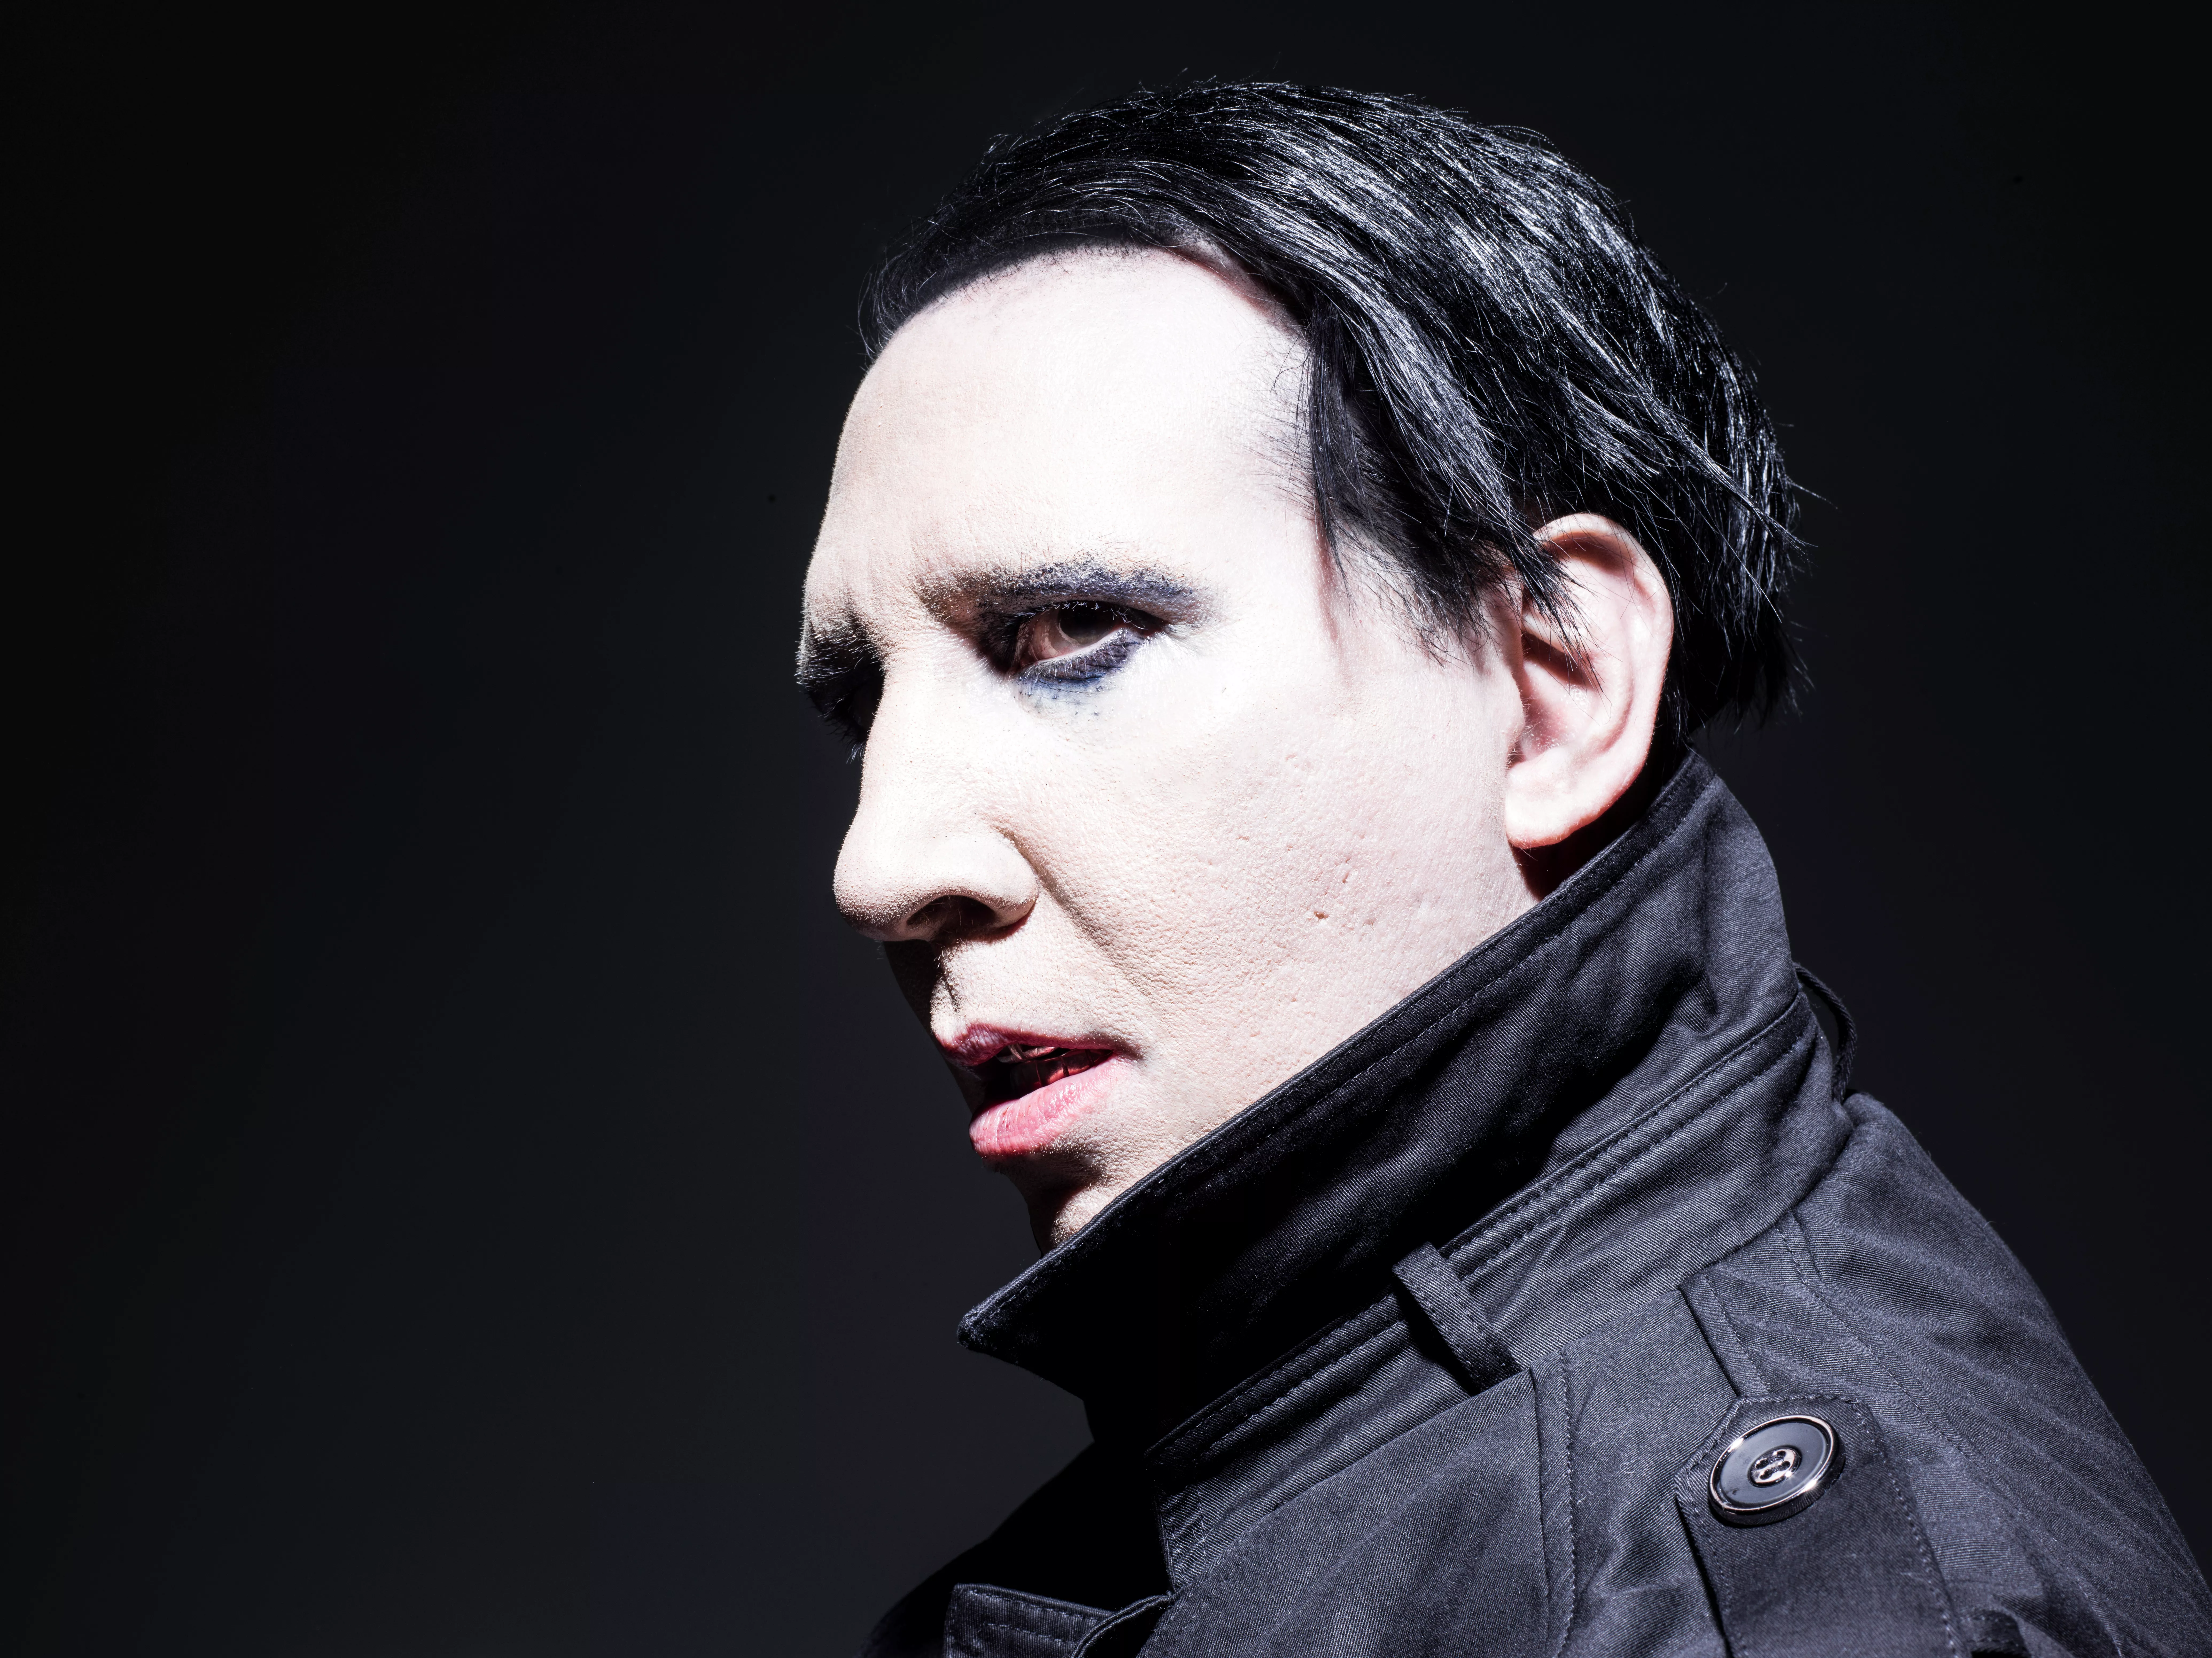 GULD FRA GEMMERNE: Da GAFFA mødte Marilyn Manson